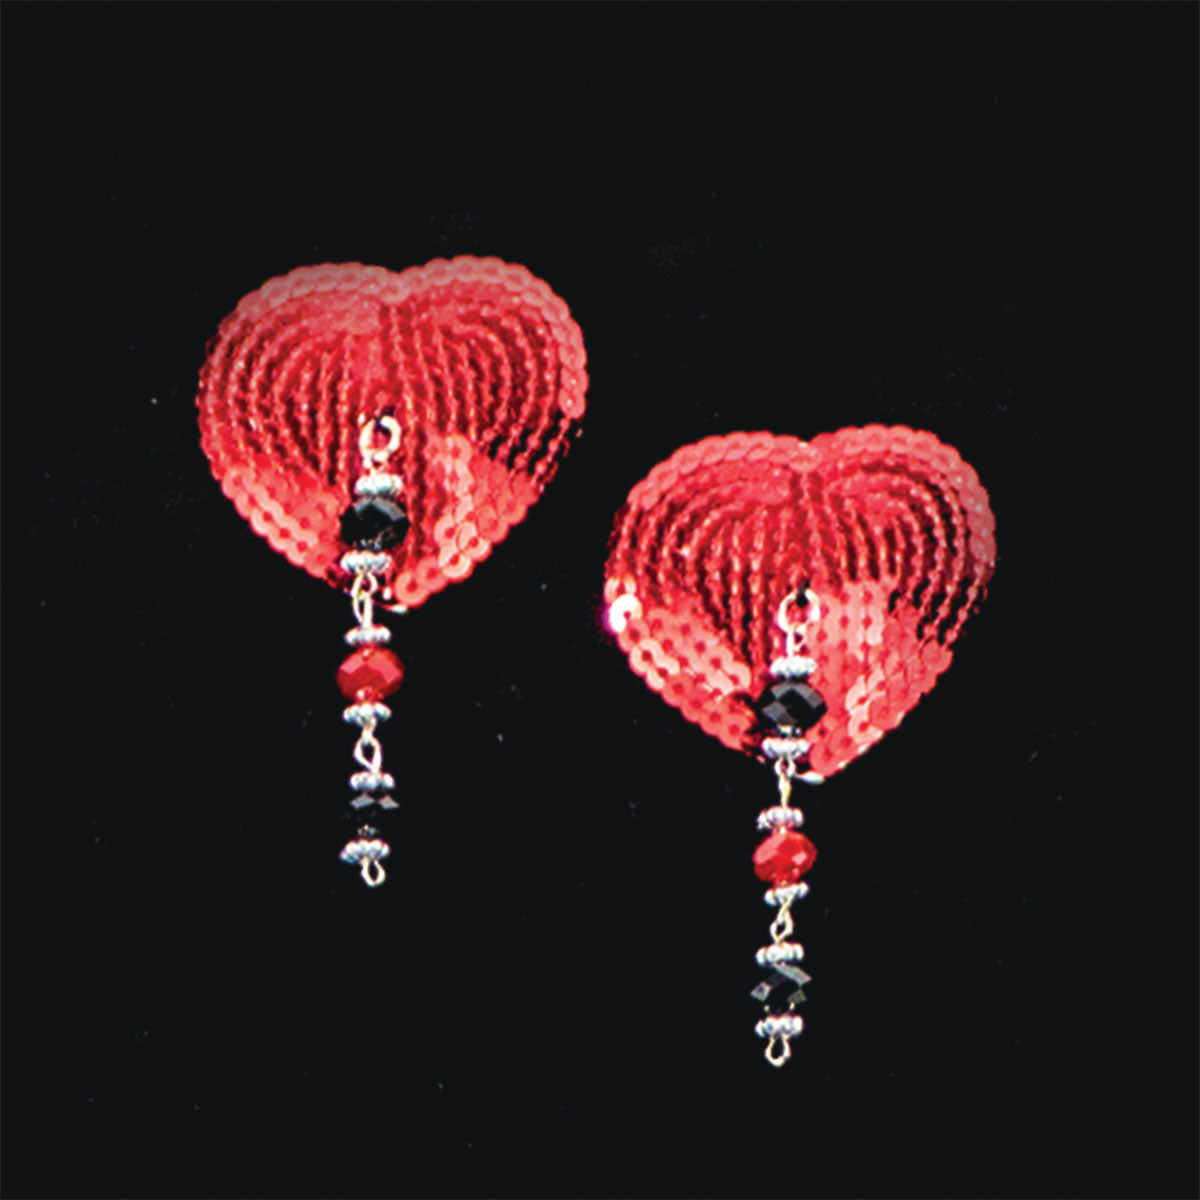 Bijoux de Nip Heart Red Sequin Pasties with Facet Beads